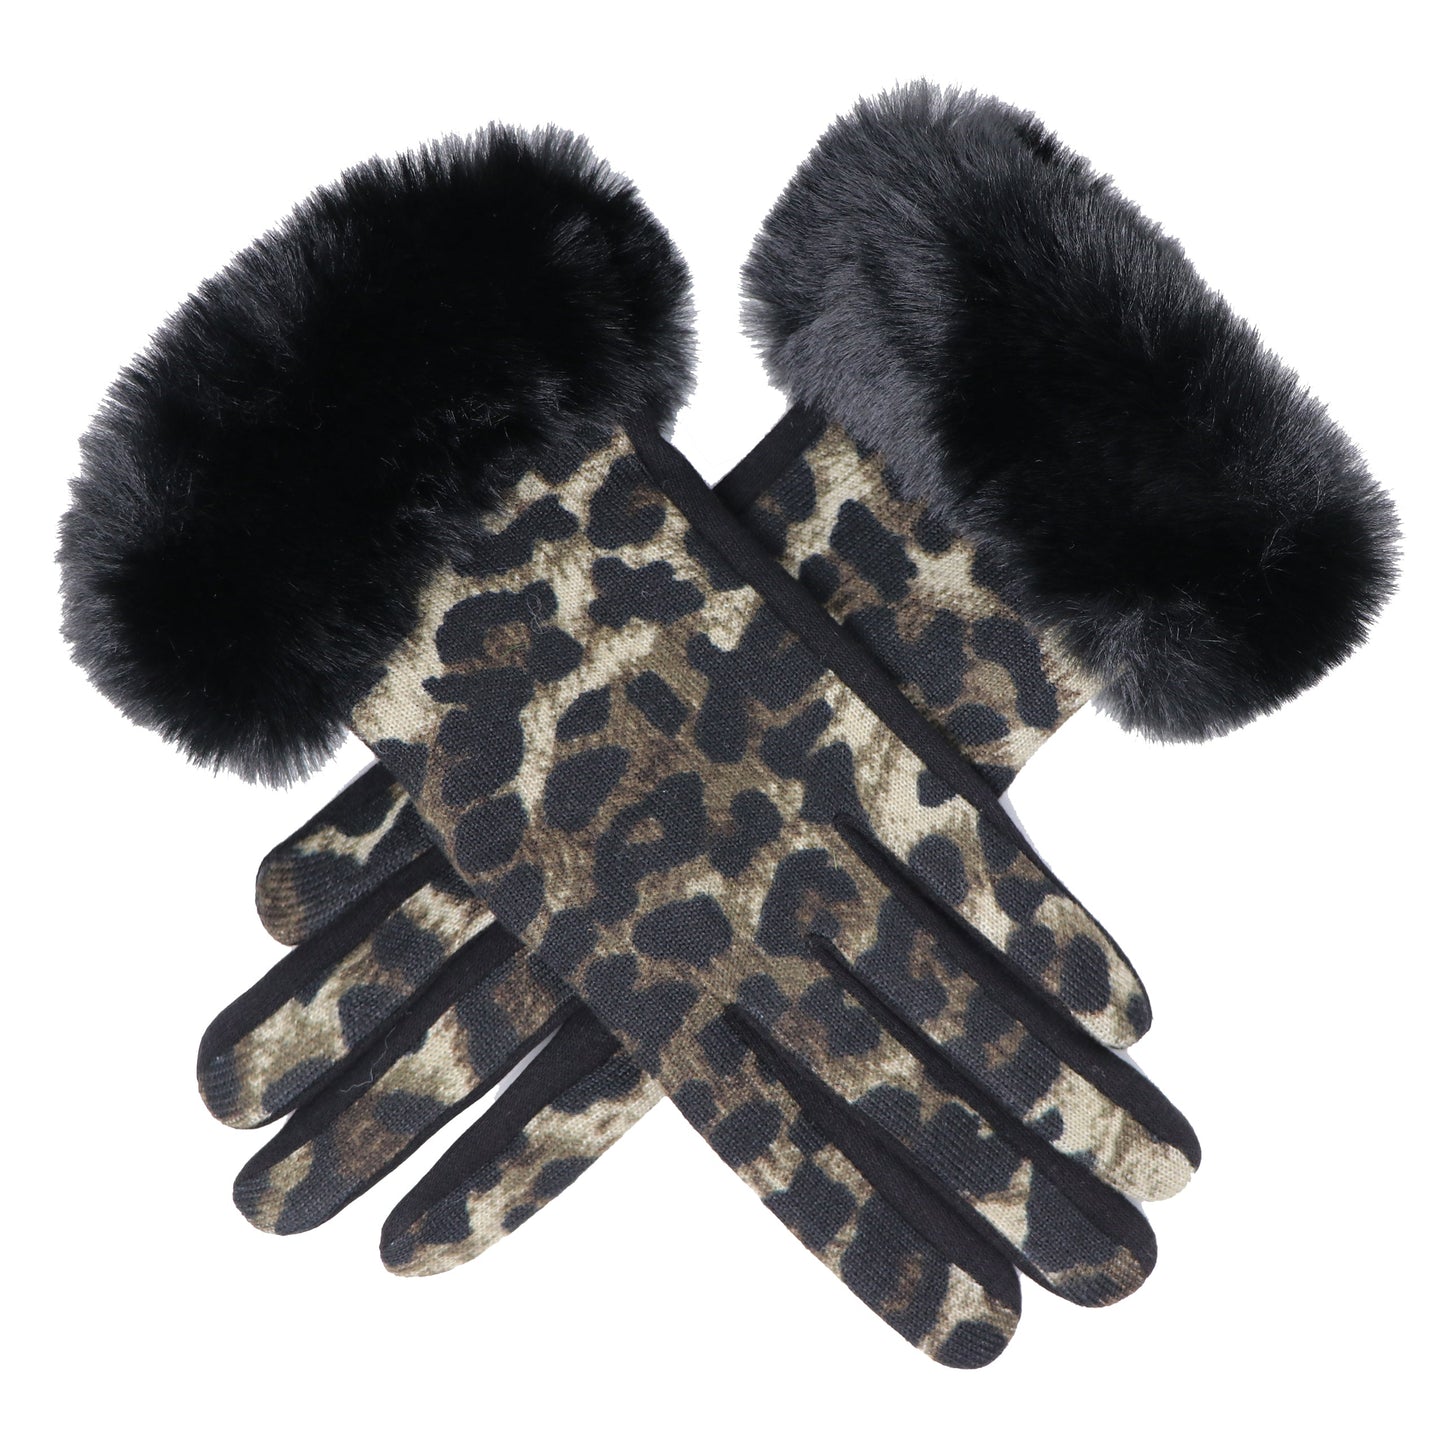 Gants de luxe Panther en fausse fourrure, compatibles avec écran tactile, taille unique